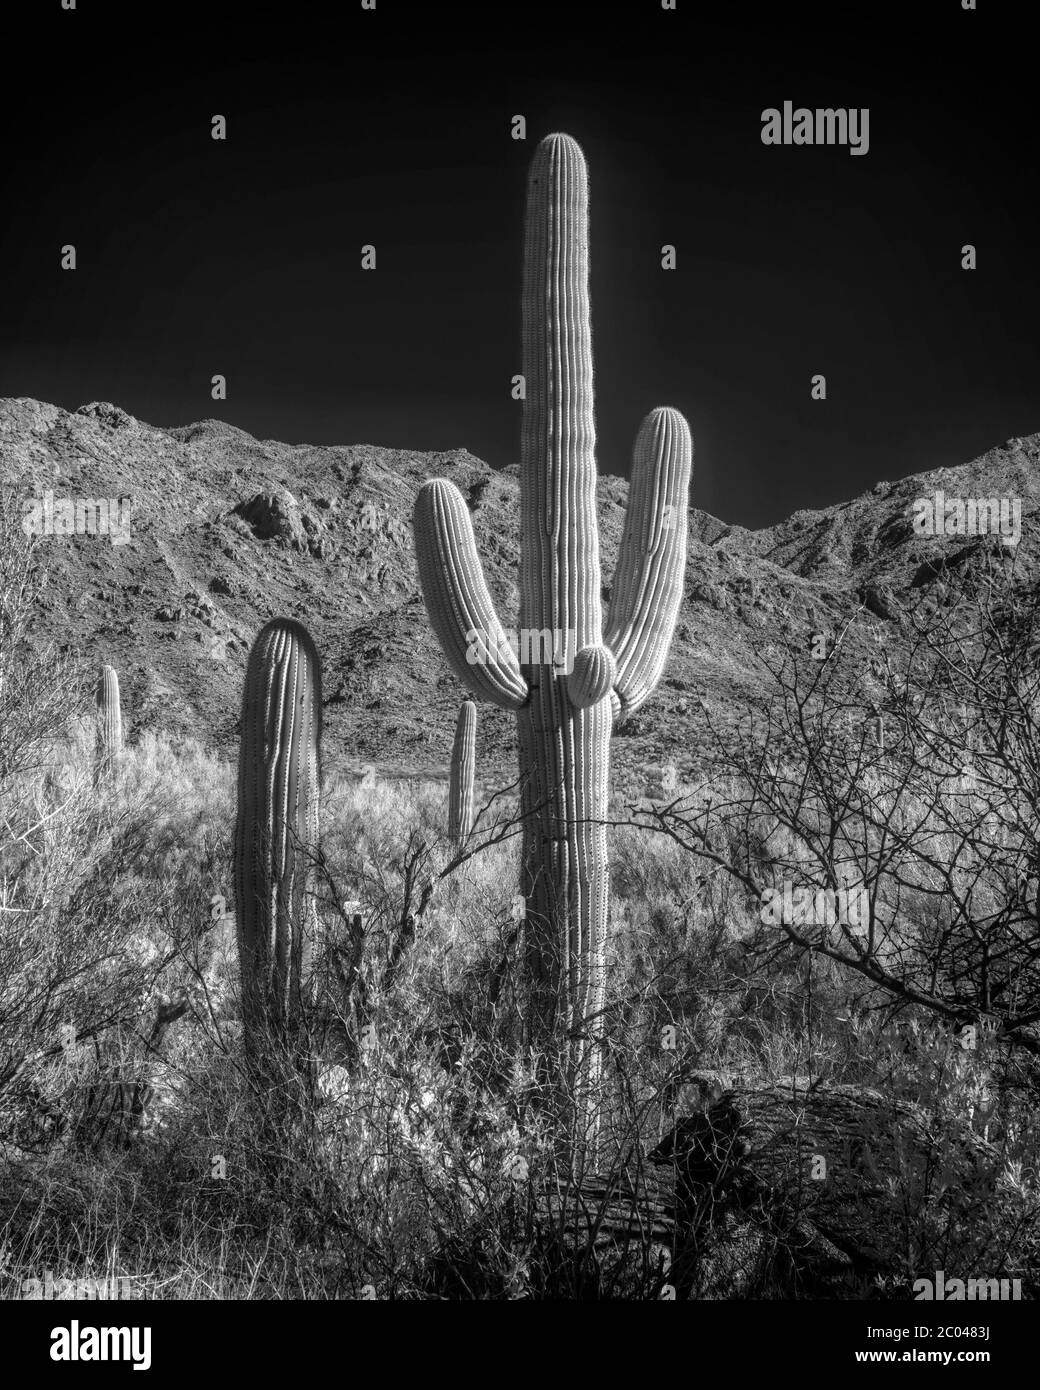 Image infrarouge avec des cactus Saguaro / Cacti et montagnes dans le comté de Pinal dans le sud de l'Arizona dans le désert de la végétation de la région de Tucson en hiver Banque D'Images